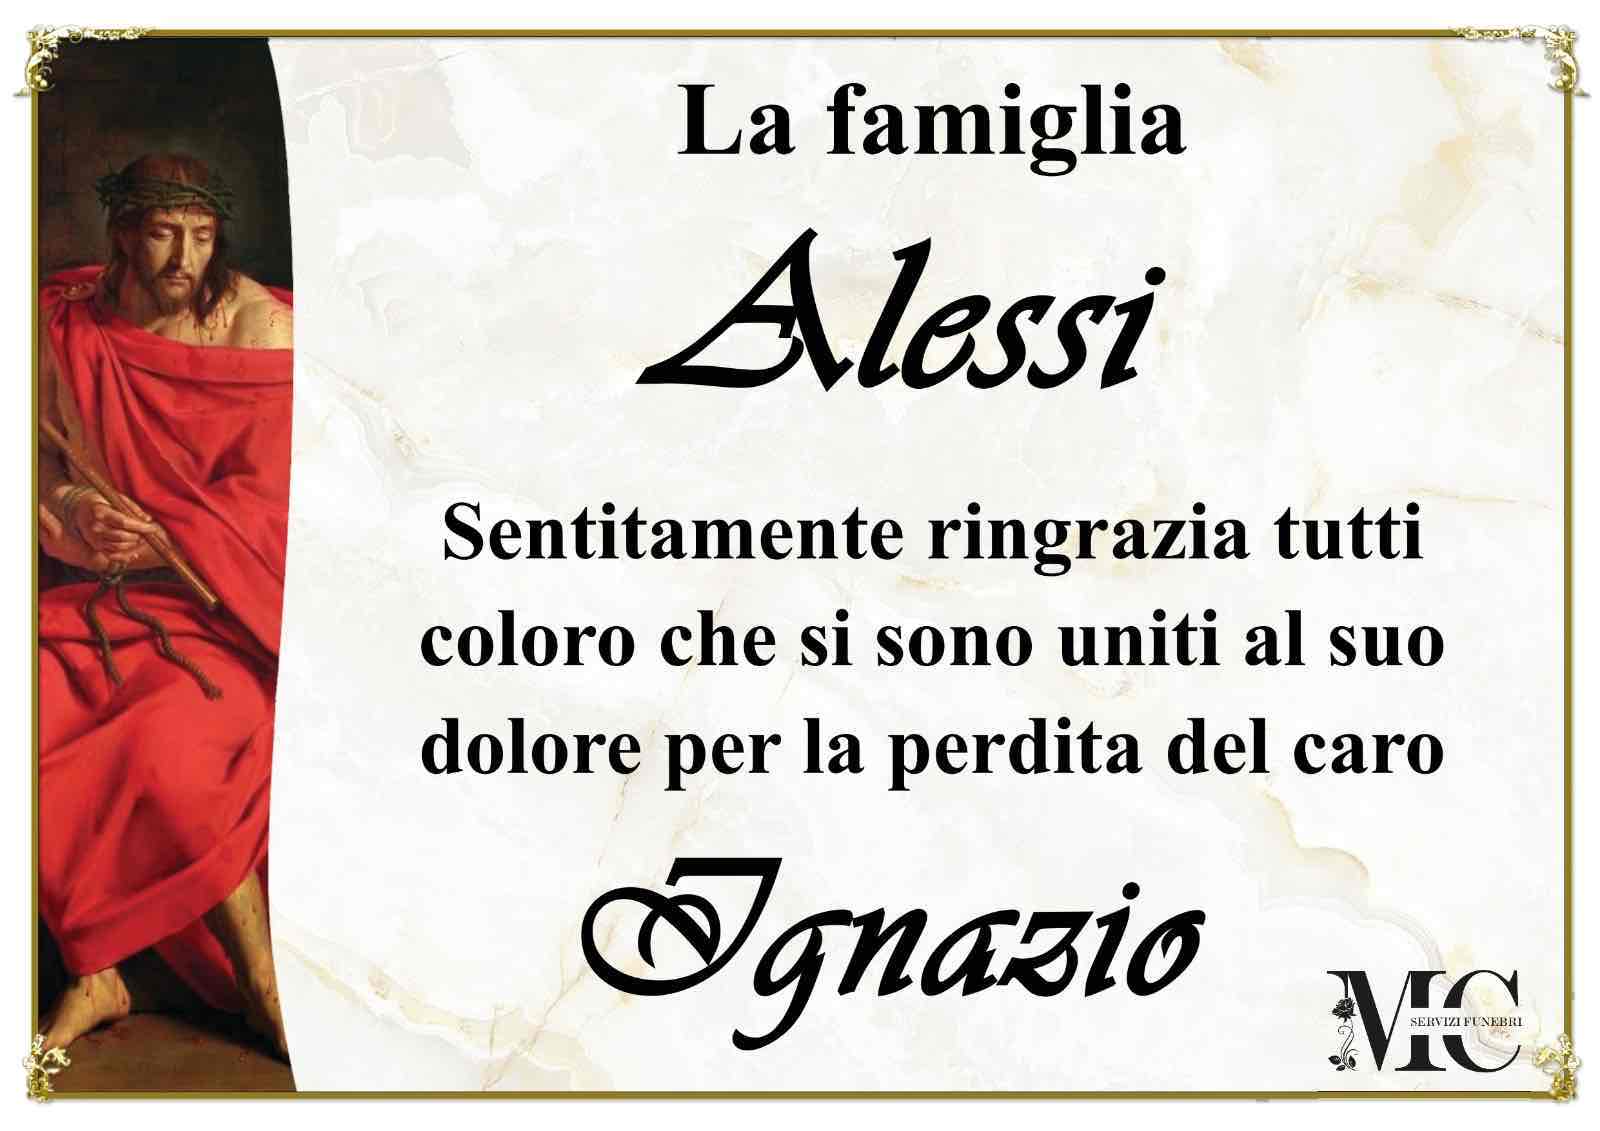 Ignazio Alessi